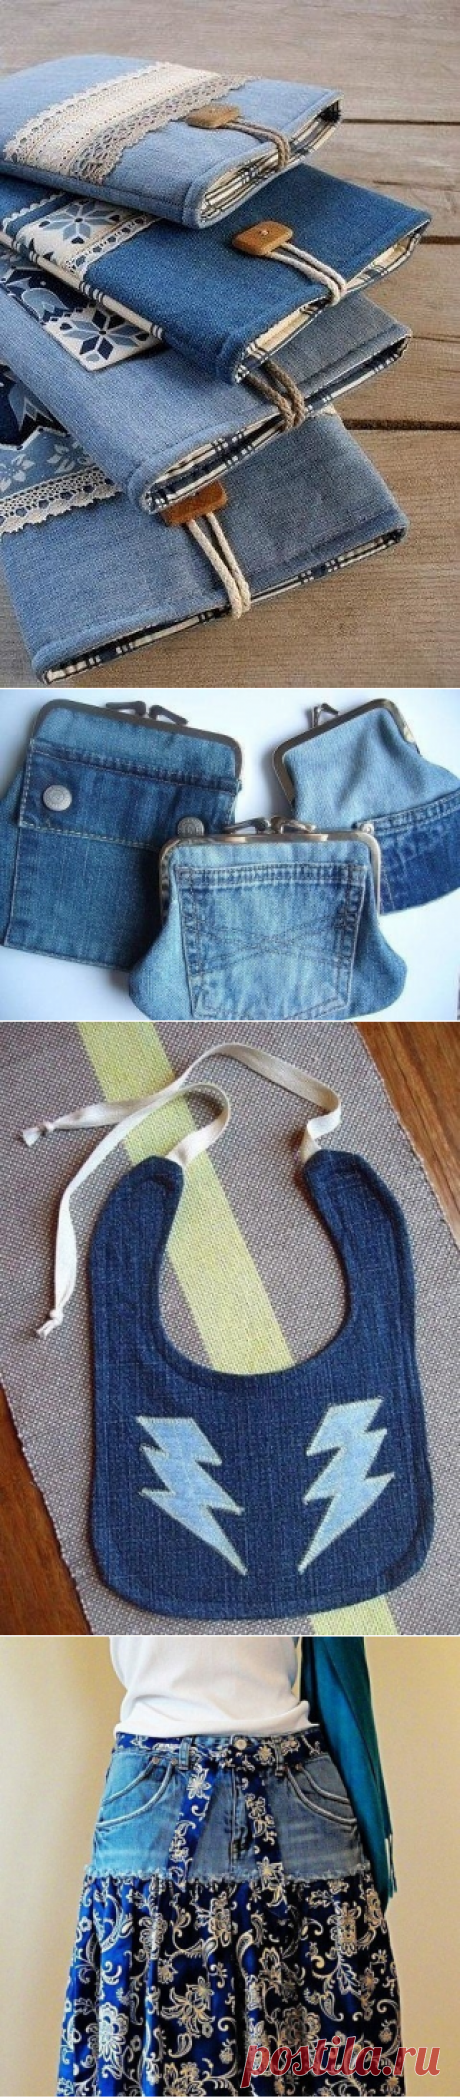 Идеи джинсовых переделок